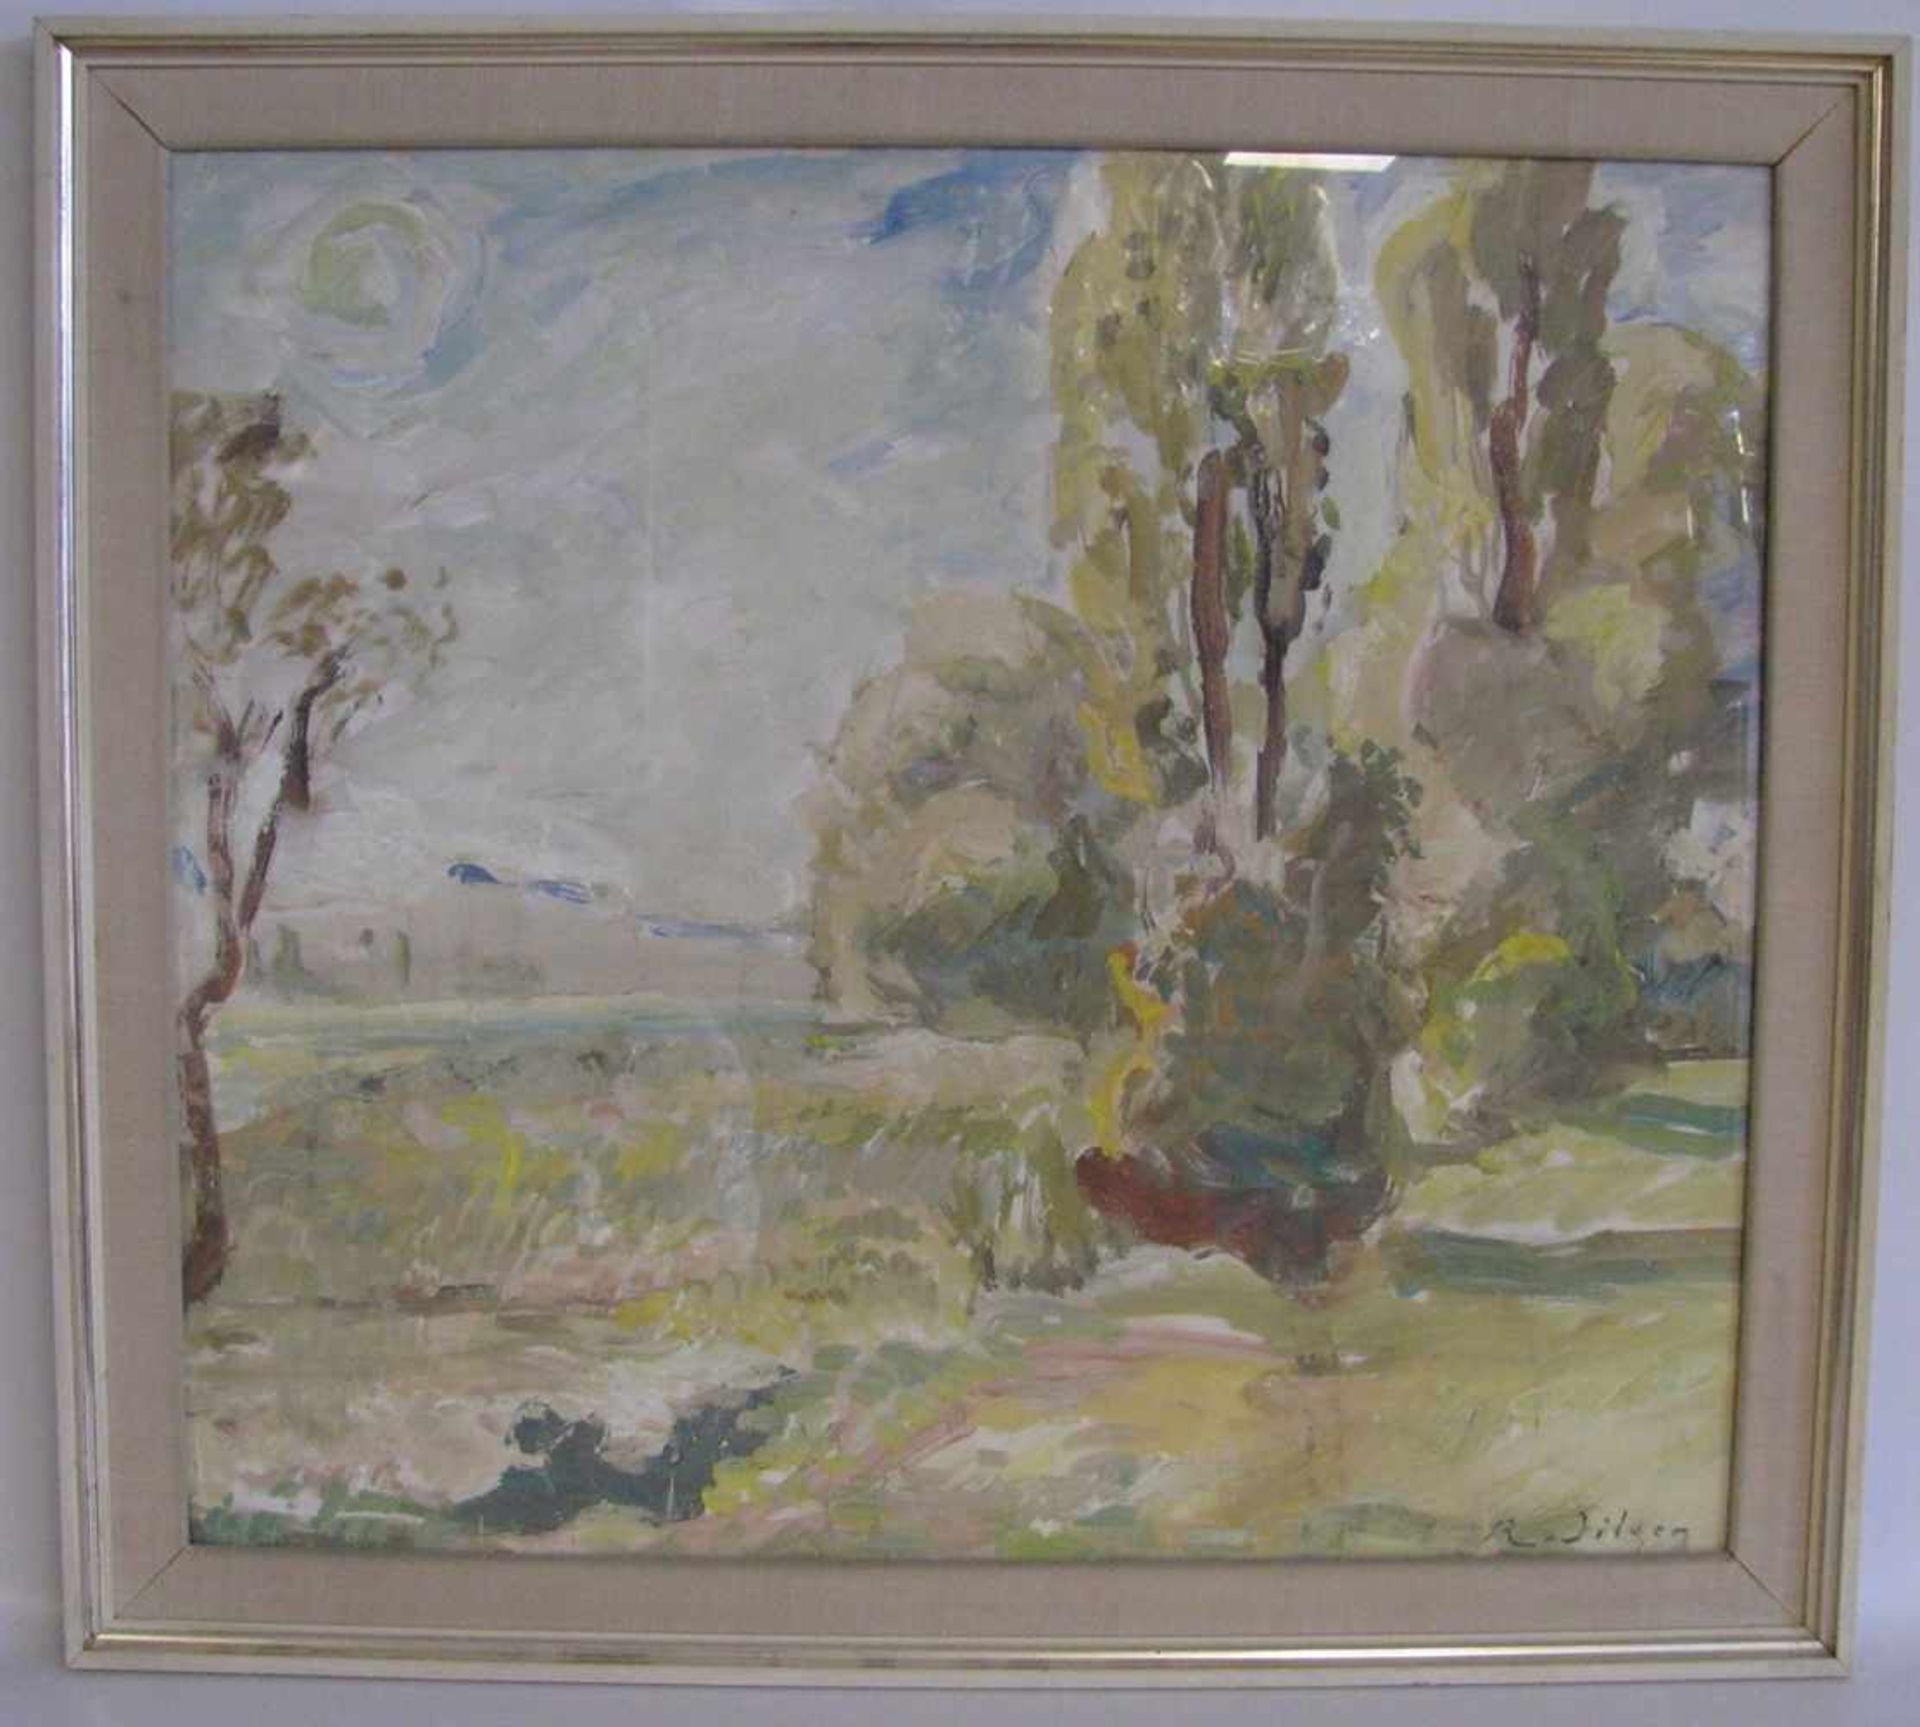 Dilger, Richard,1887 - 1973, Überlingen - Allensbach, deutscher Landschaftsmaler, bet. "Pappeln am